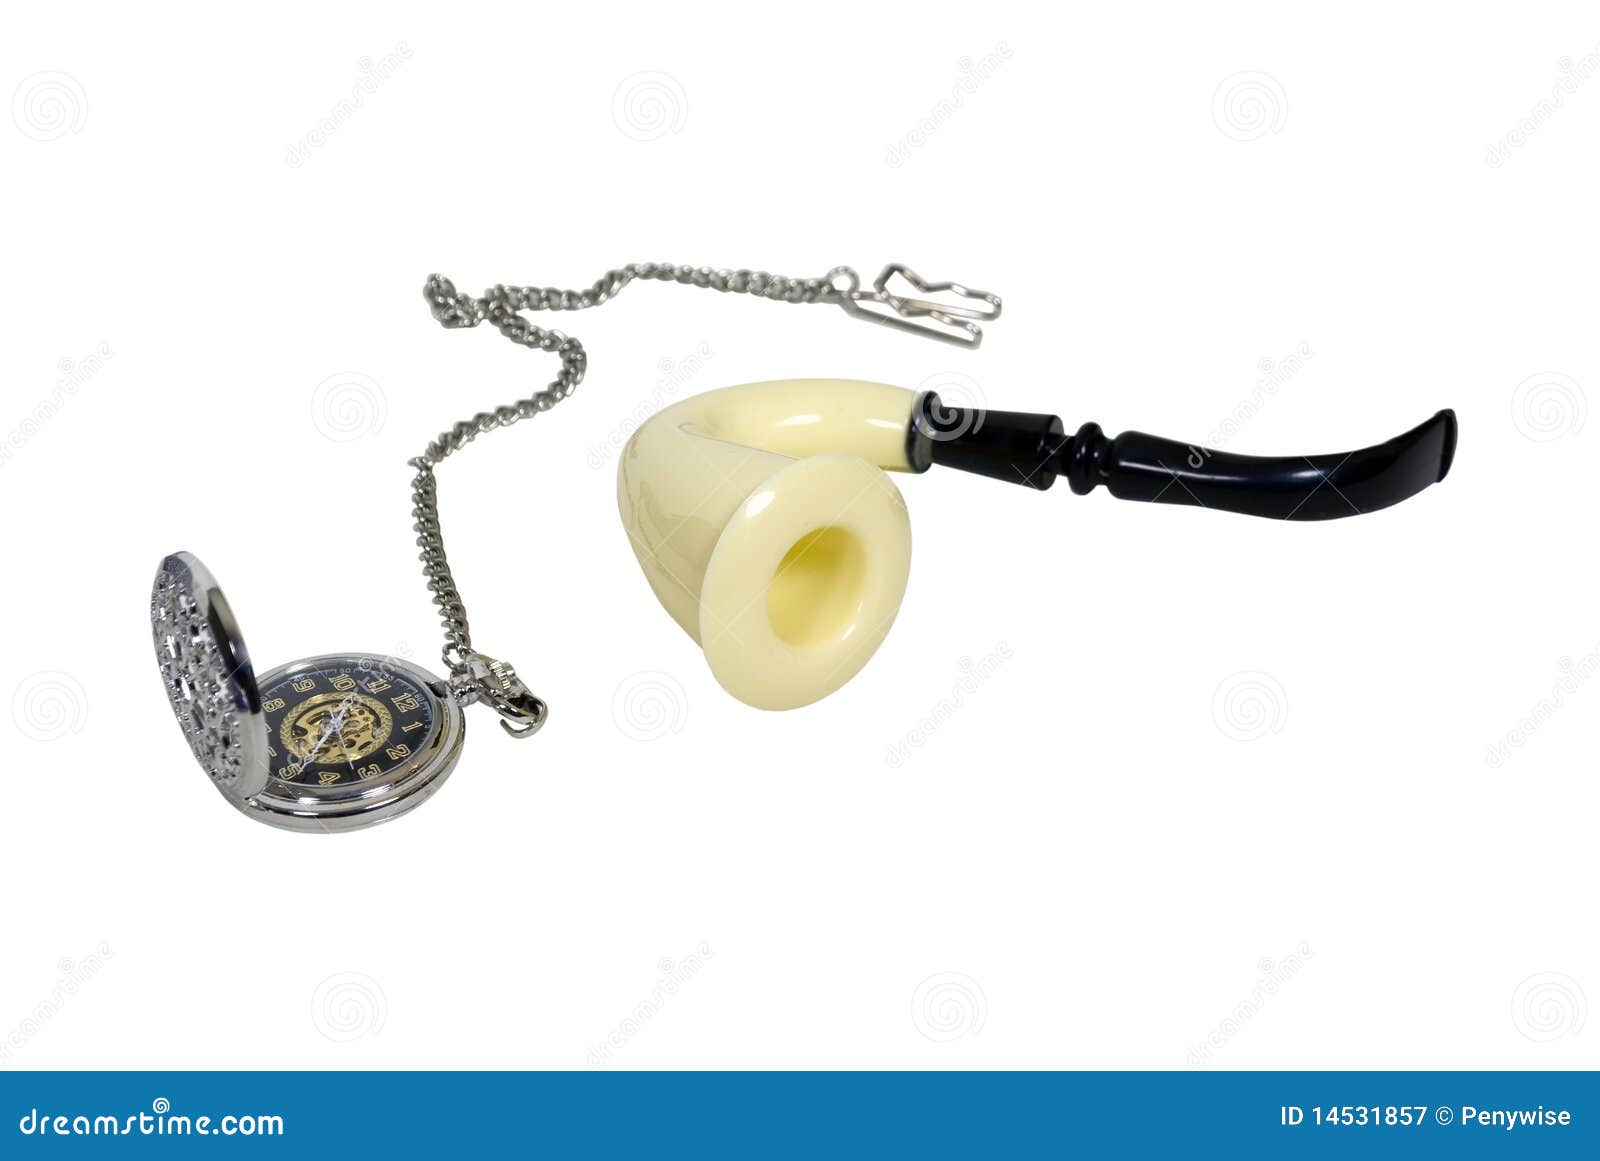 Gli accessori del Grandpa compreso una vigilanza di casella d'argento con una catena del metallo e un meerchaum convogliano - il percorso incluso